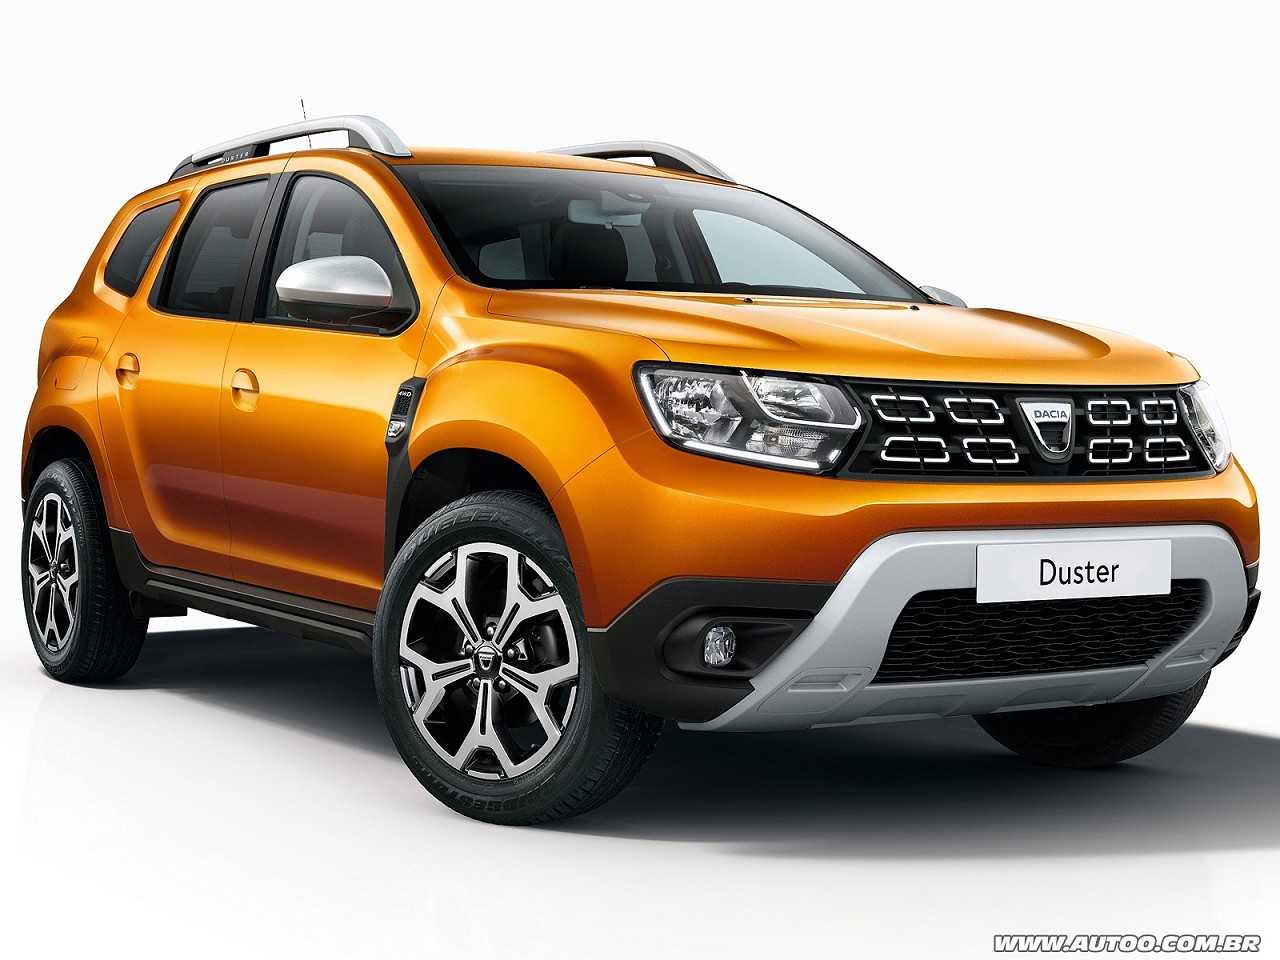 Nova gerao do Dacia Duster que ser revelada no Salo de Frankfurt